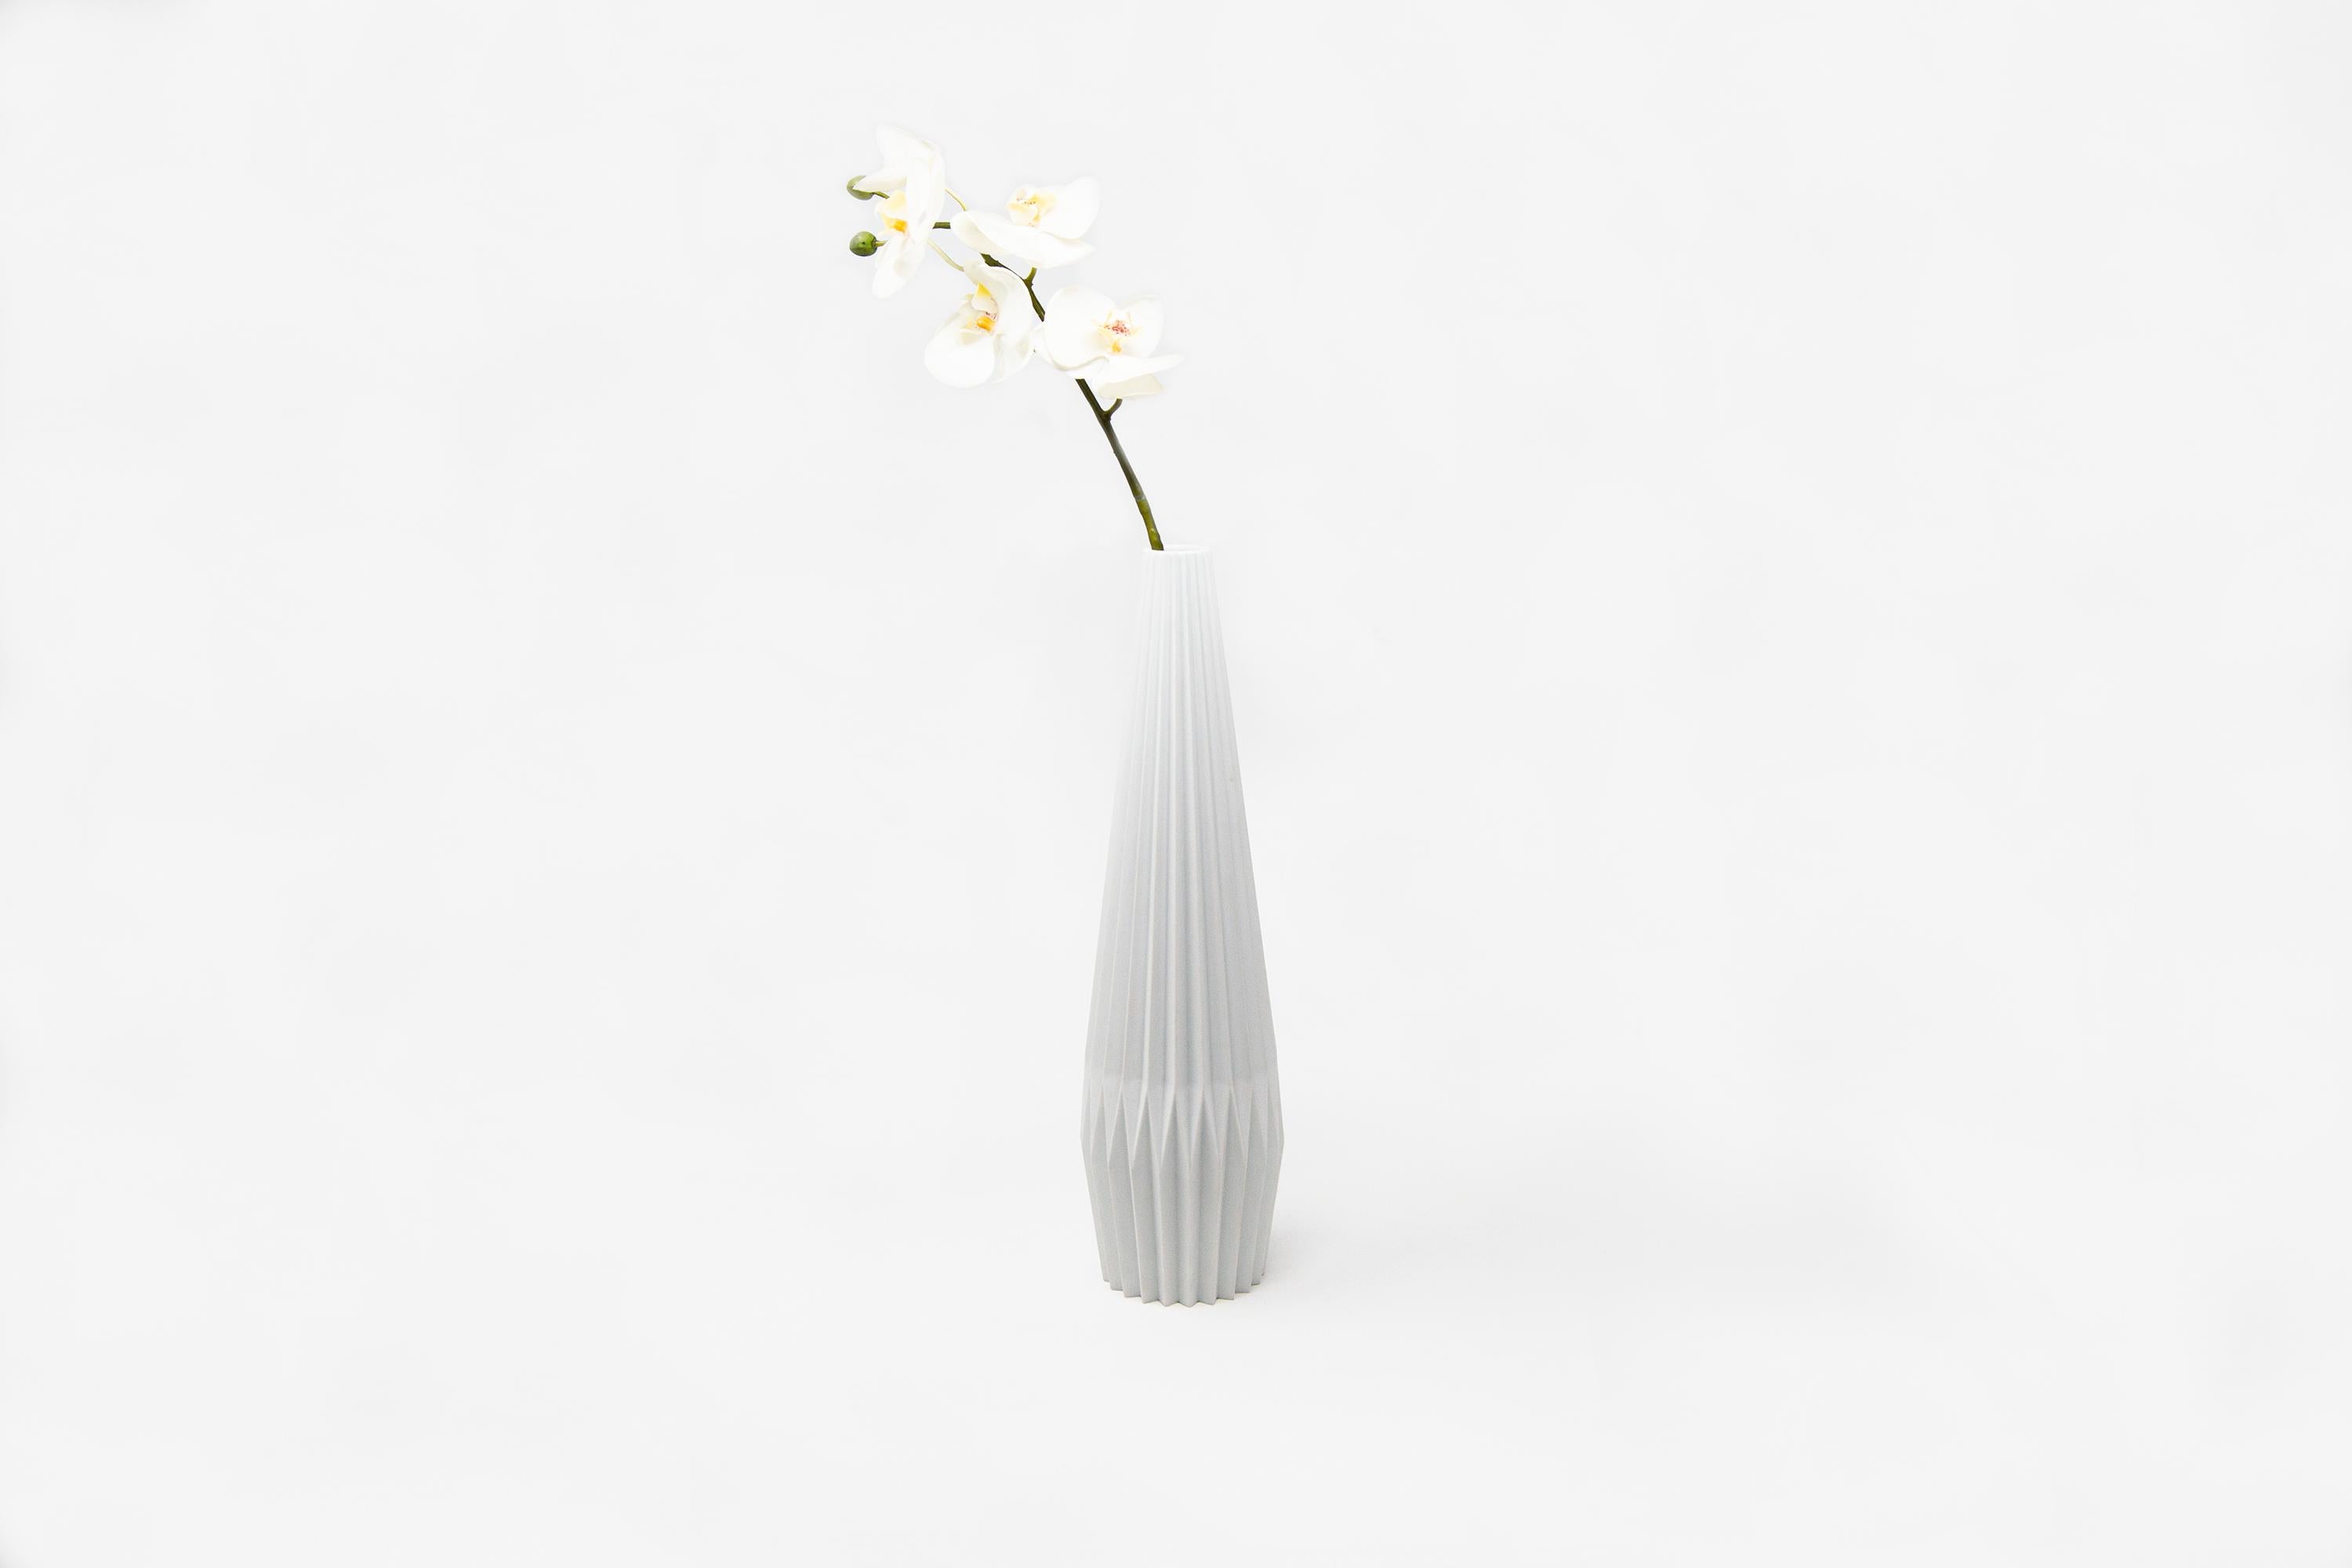 Diese Vase wurde von Denis Guidone entworfen und in Japan von Risogama für Hands on Design, einer traditionellen Töpferei, handgefertigt. Es erinnert an die japanische Tradition des Origami, der Designer verwendet das weiße Arita-Porzellan wie